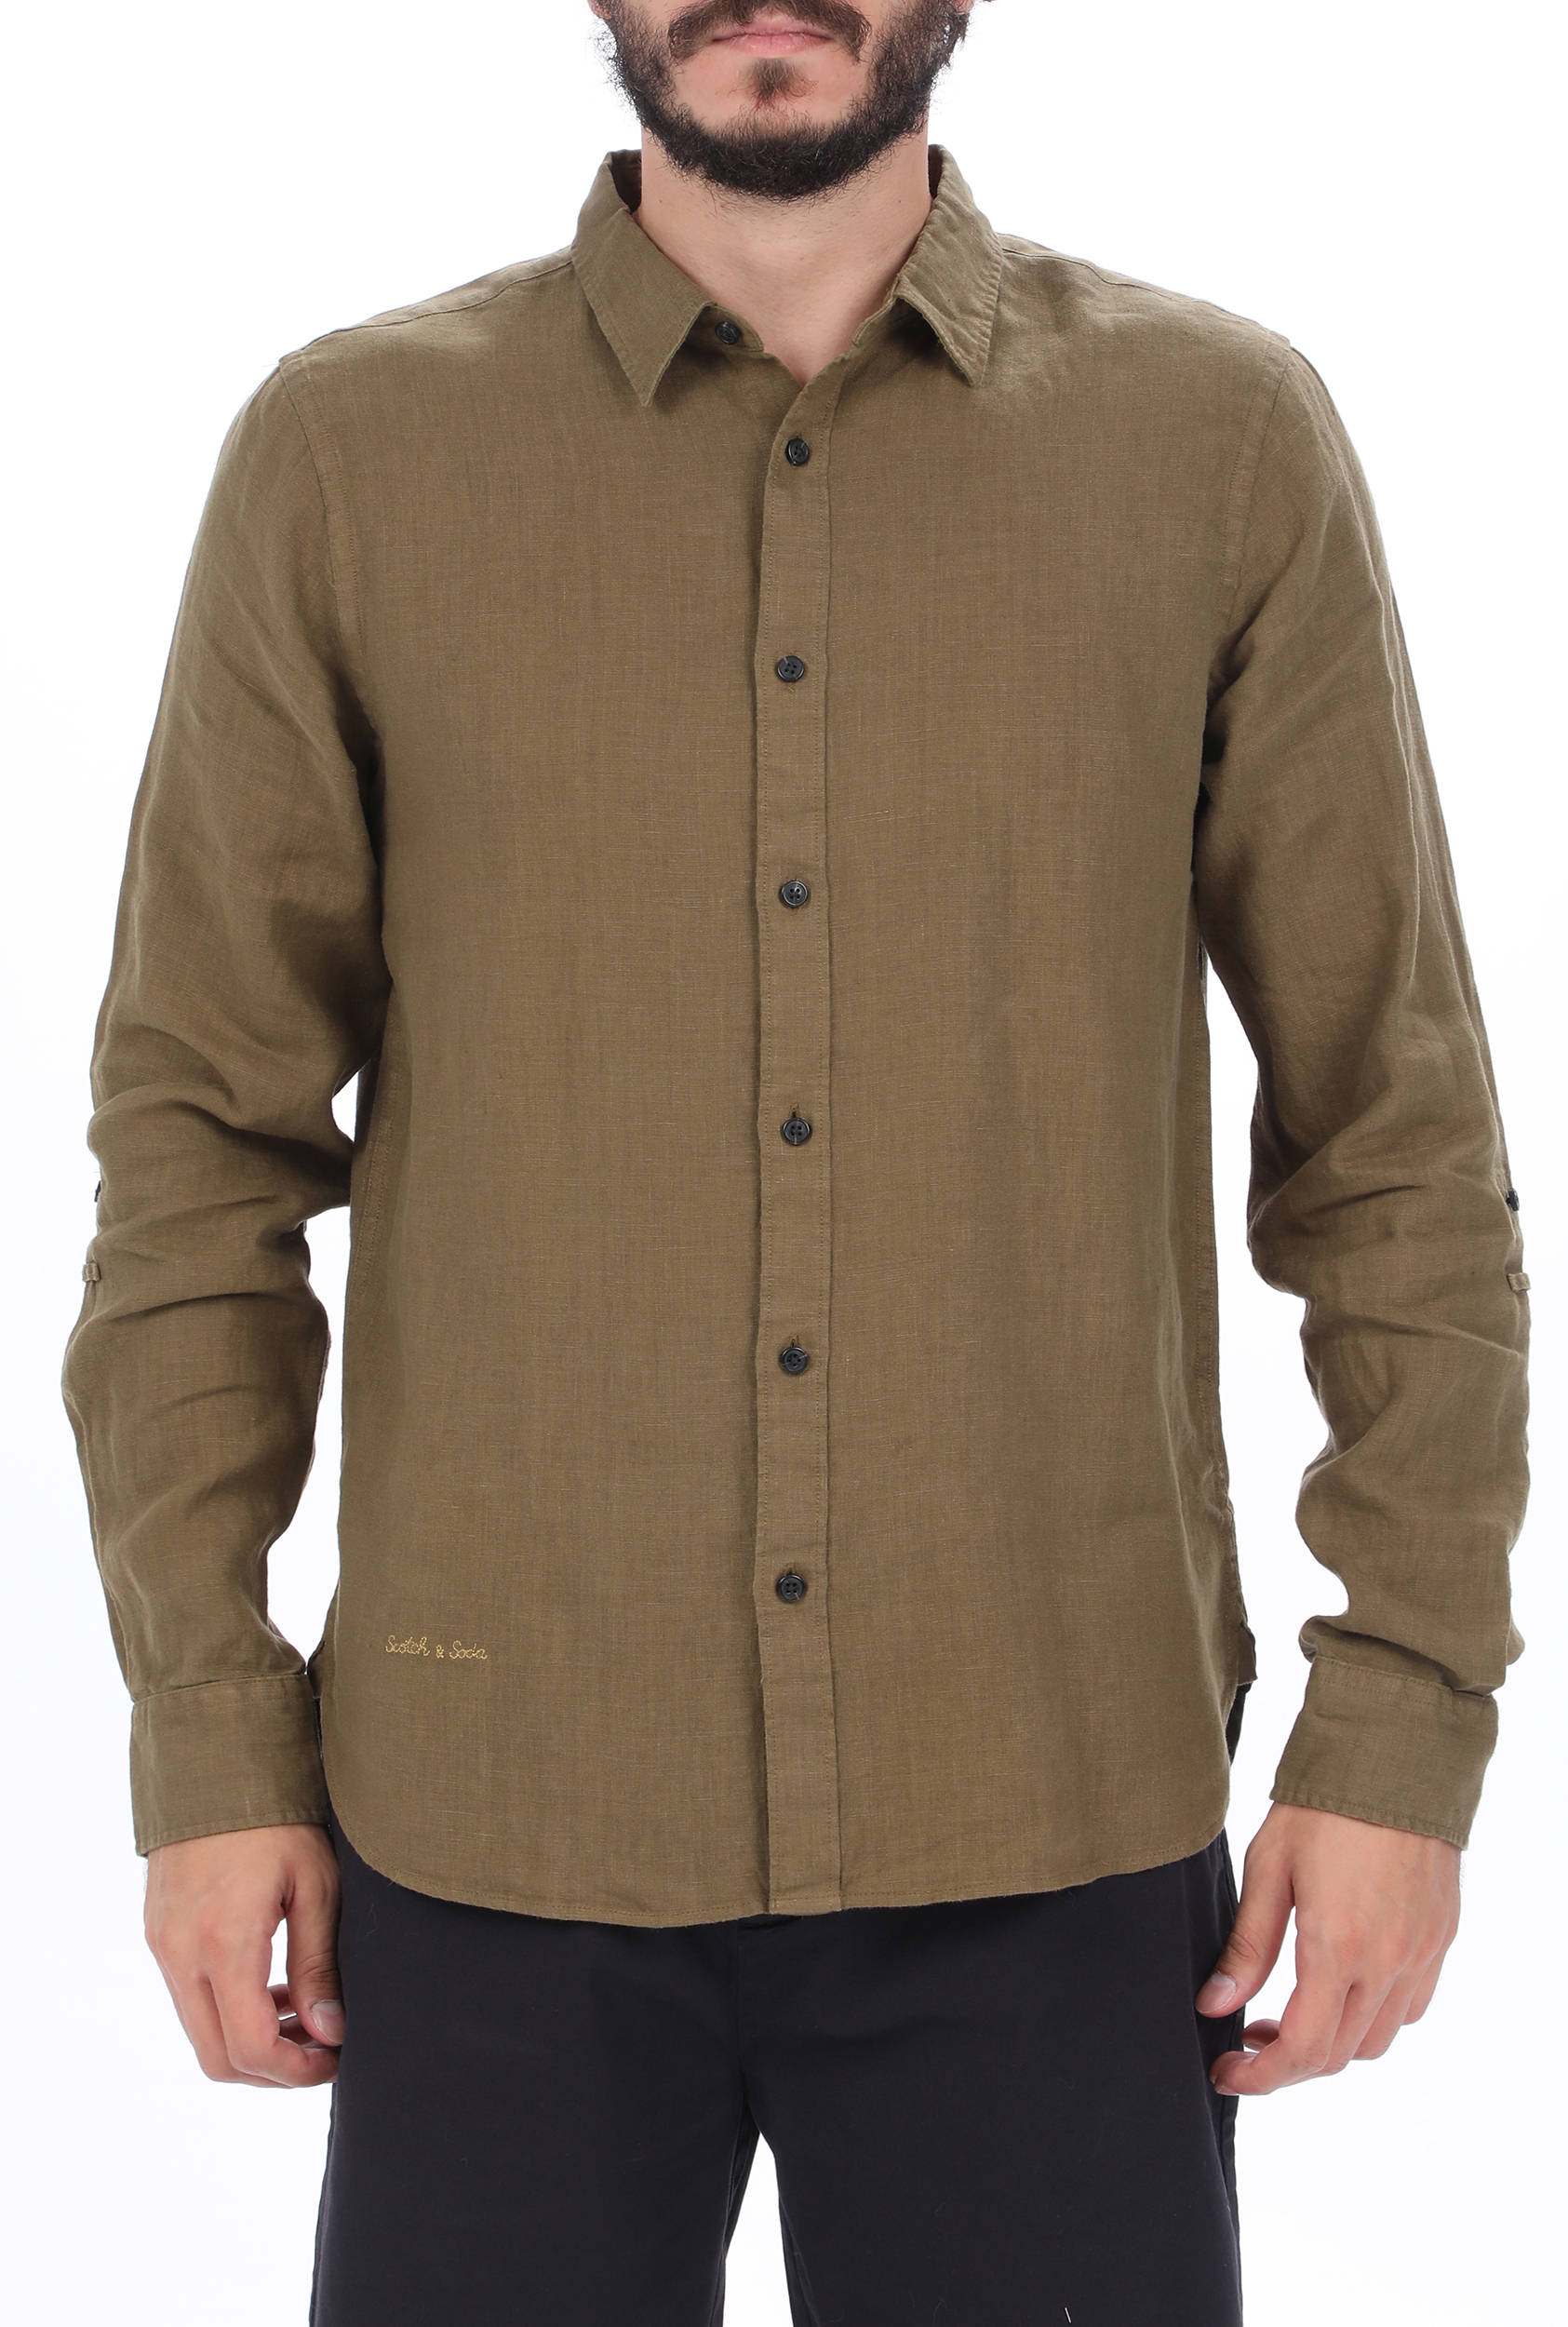 Ανδρικά/Ρούχα/Πουκάμισα/Μακρυμάνικα SCOTCH & SODA - Ανδρικό λινό πουκάμισο SCOTCH & SODA REGULAR FIT- Garment-dyed line καφέ